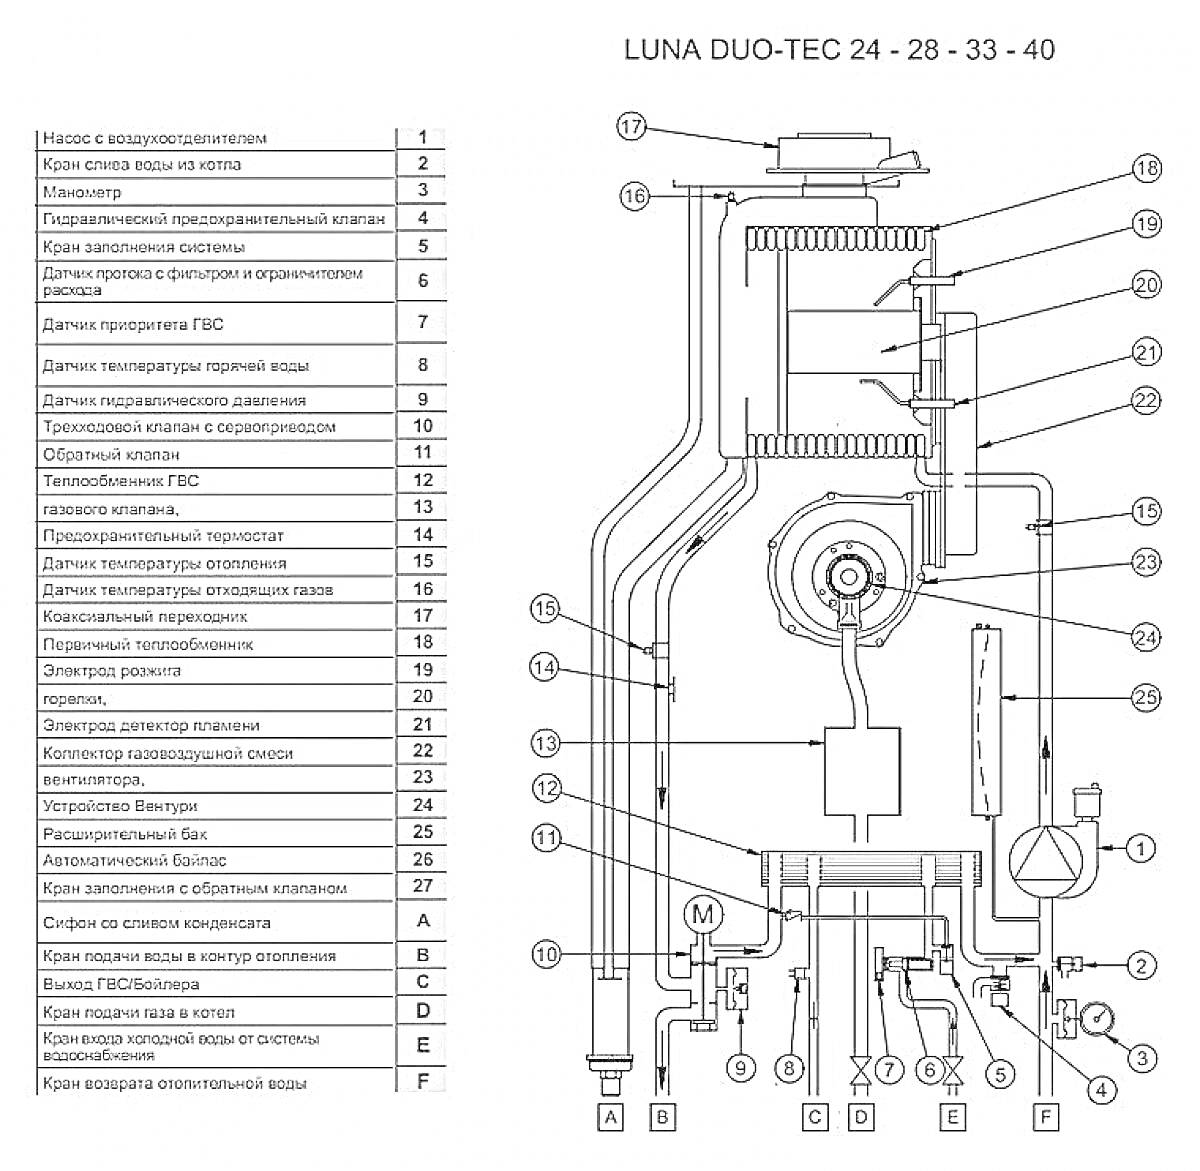 Раскраска Схема котла LUNA DUO-TEC 24 - 28 - 33 - 40 с наименованием всех элементов